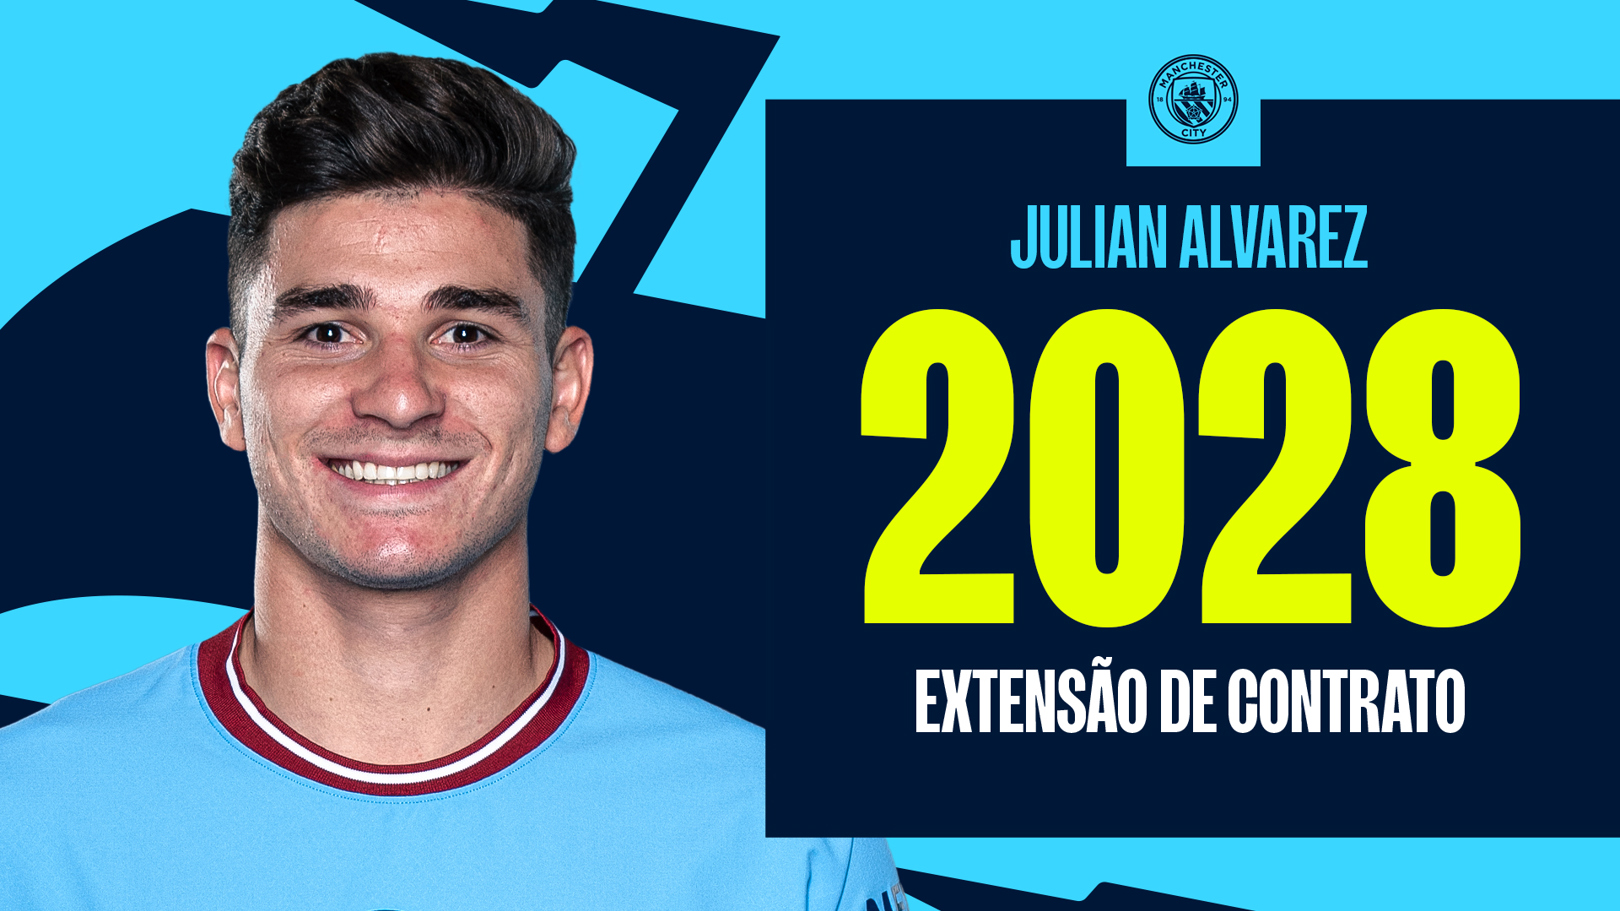 Julián Álvarez renova o seu contrato com o City!